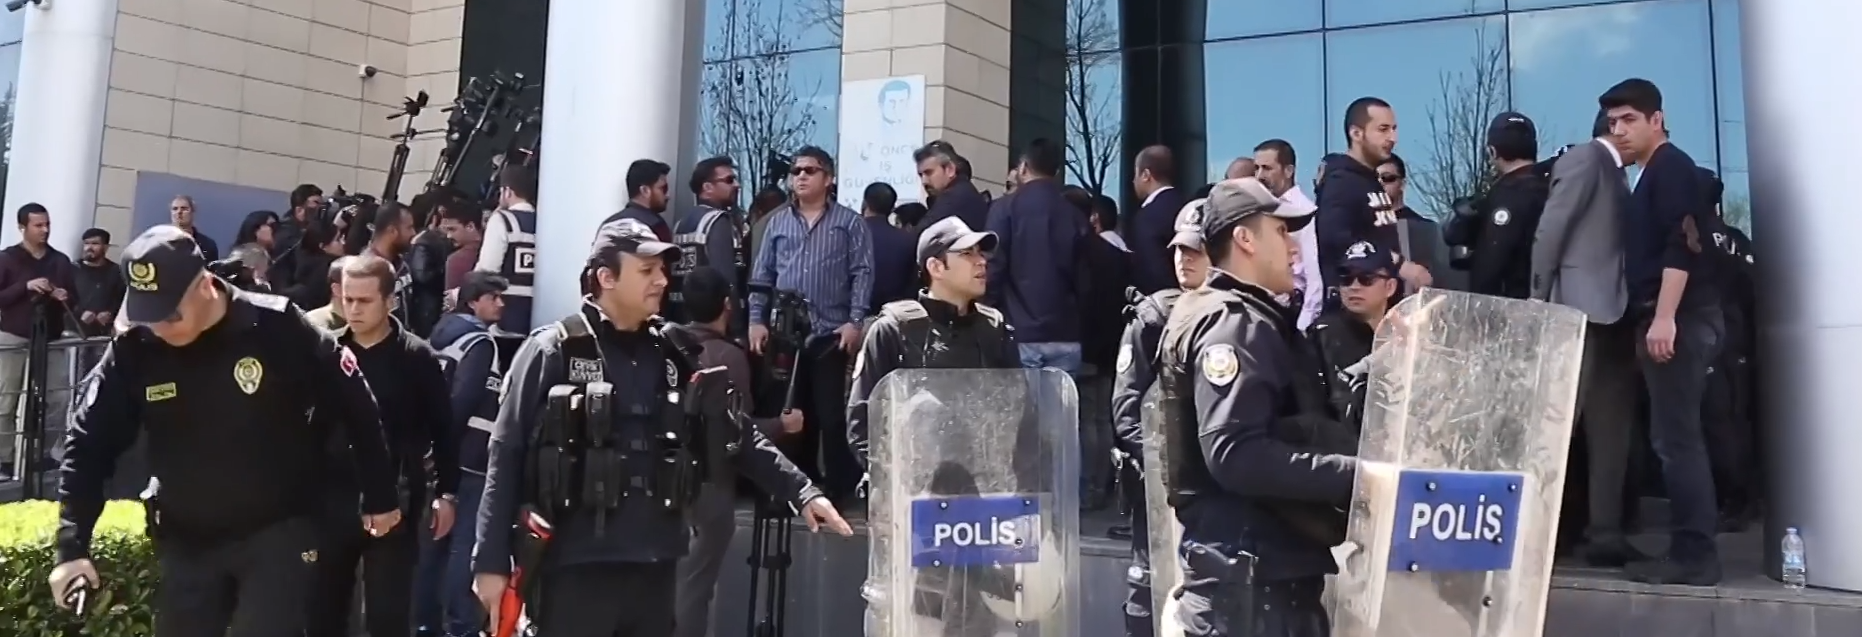 Επεισόδια στην Τουρκία – Κούρδοι προσπάθησαν να εισβάλουν στο δημαρχείο του Ντιγιάρμπακιρ (βίντεο)